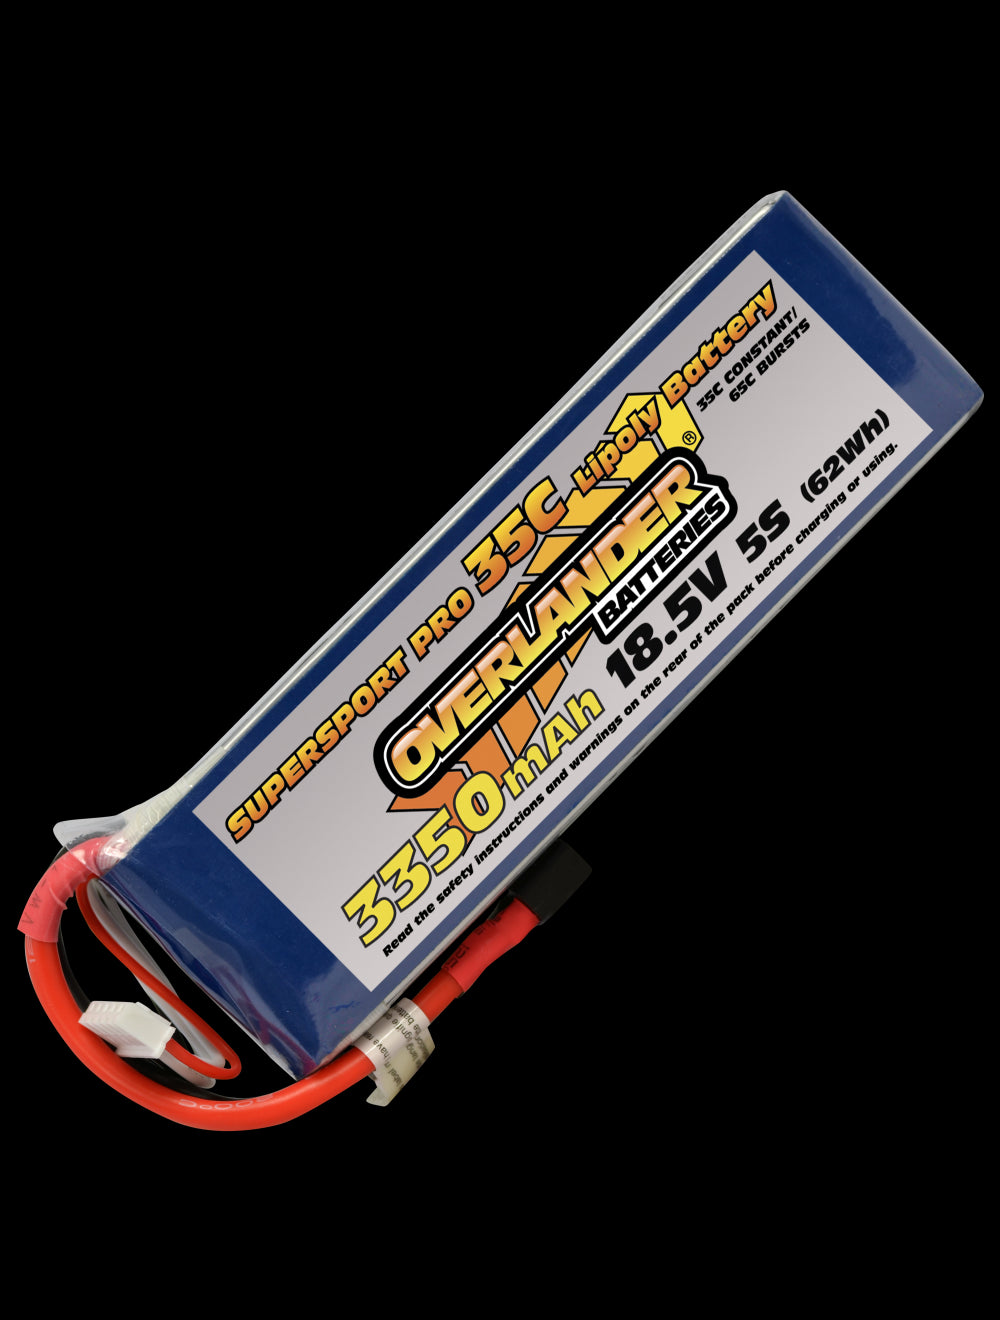 Overlander 3350mAh 18.5V 5S 35C Supersport Pro LiPo Battery - XT60 Connector 3123